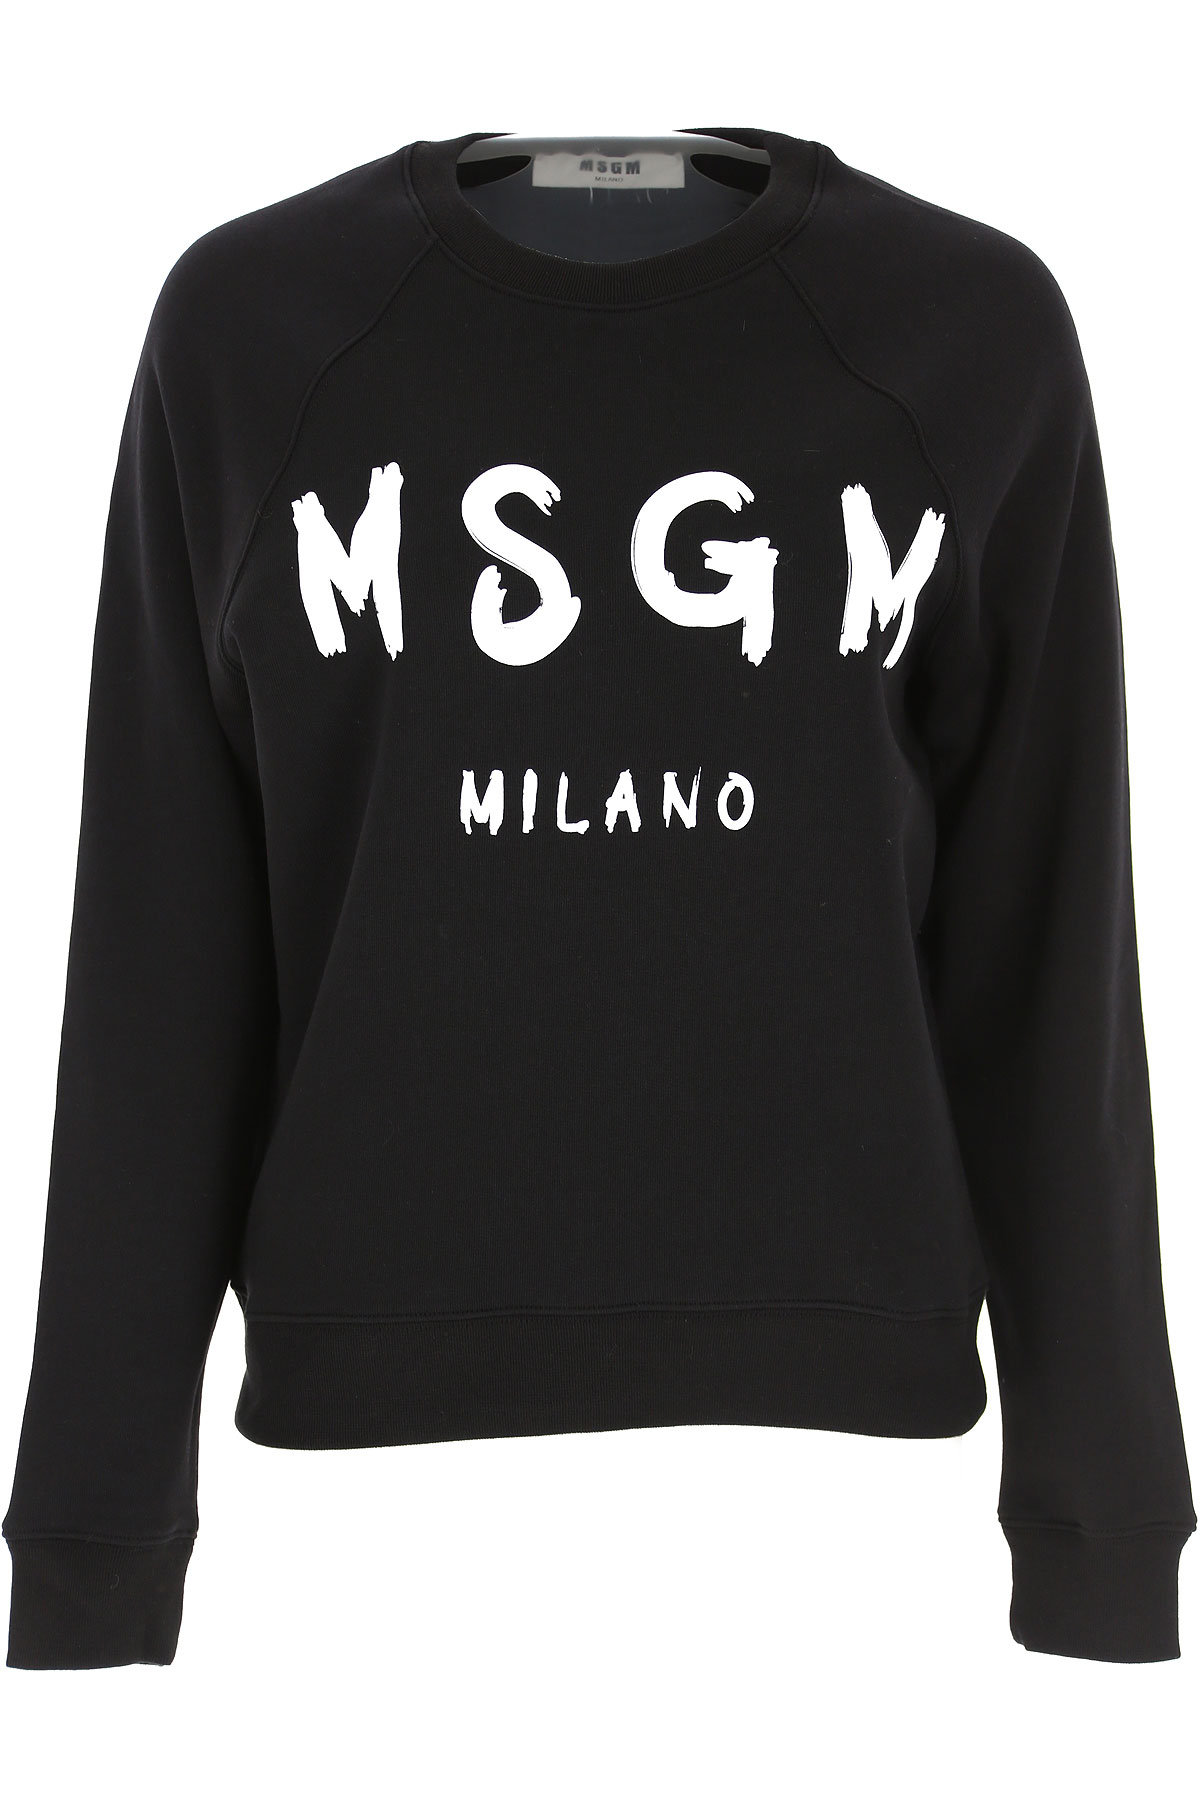 MSGM Sweatshirt für Damen, Kapuzenpulli, Hoodie, Sweats Günstig im Sale, Schwarz, Baumwolle, 2017, 38 M